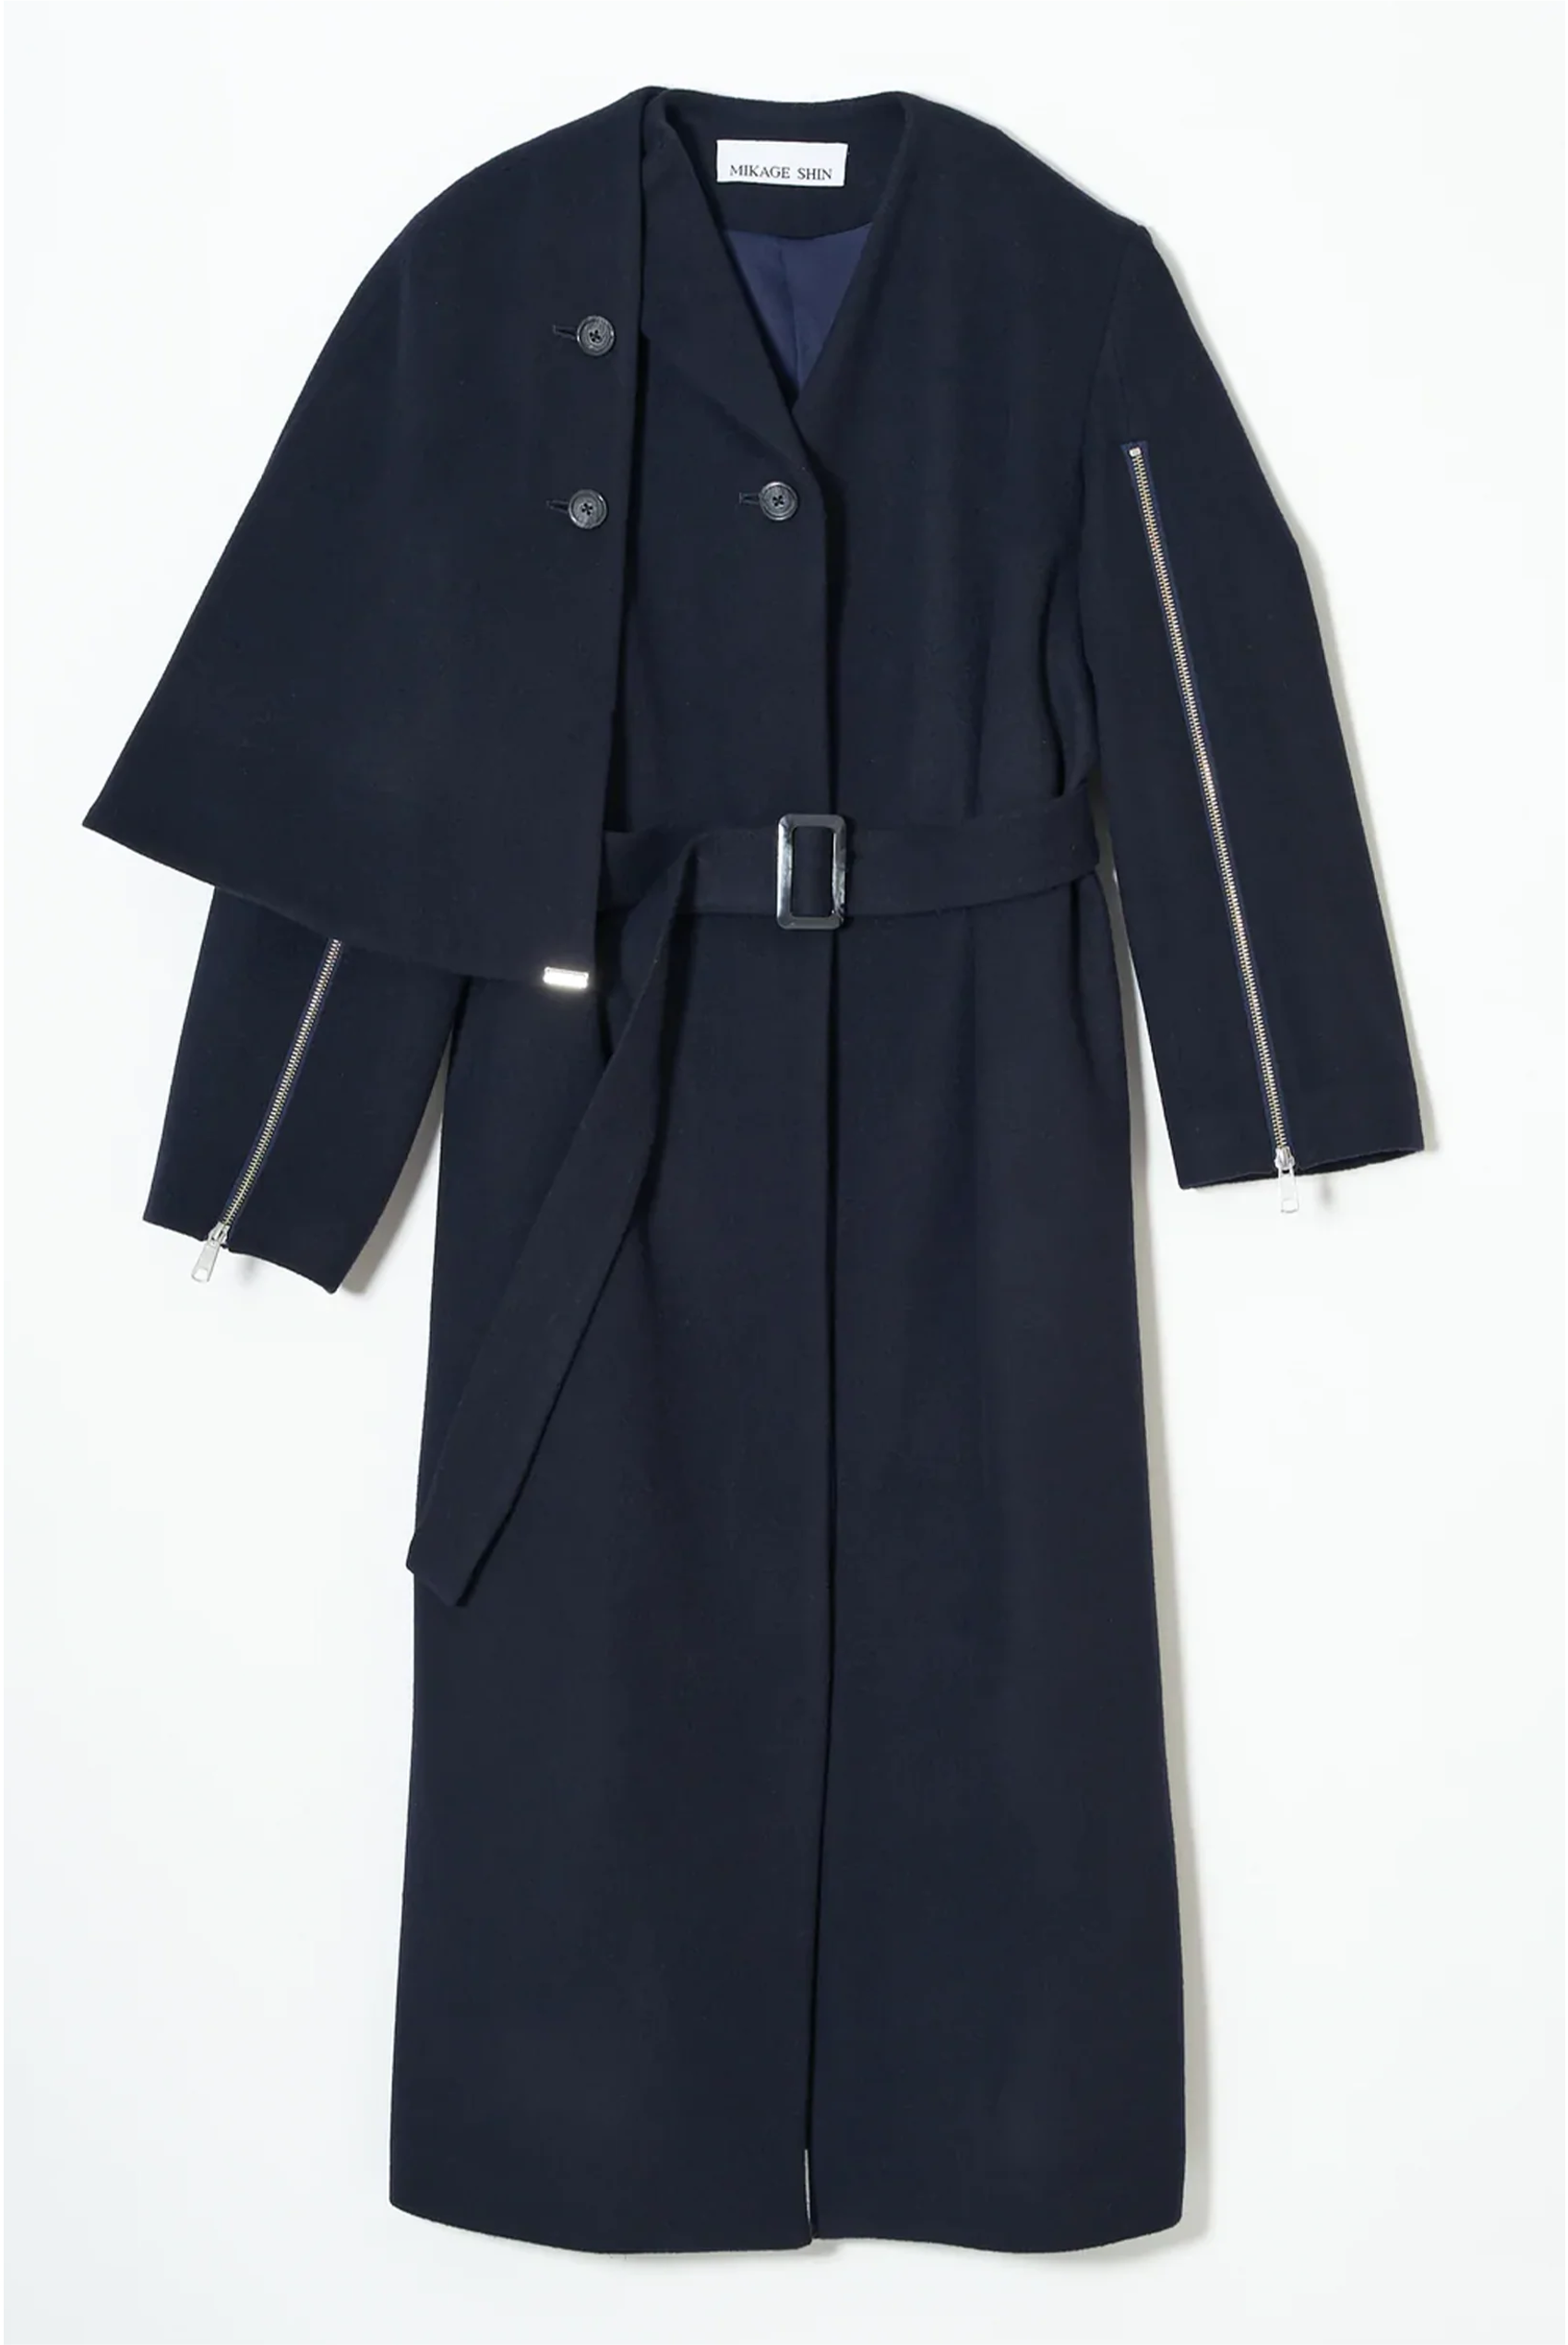 素材アルパカMIKAGE SHIN coat